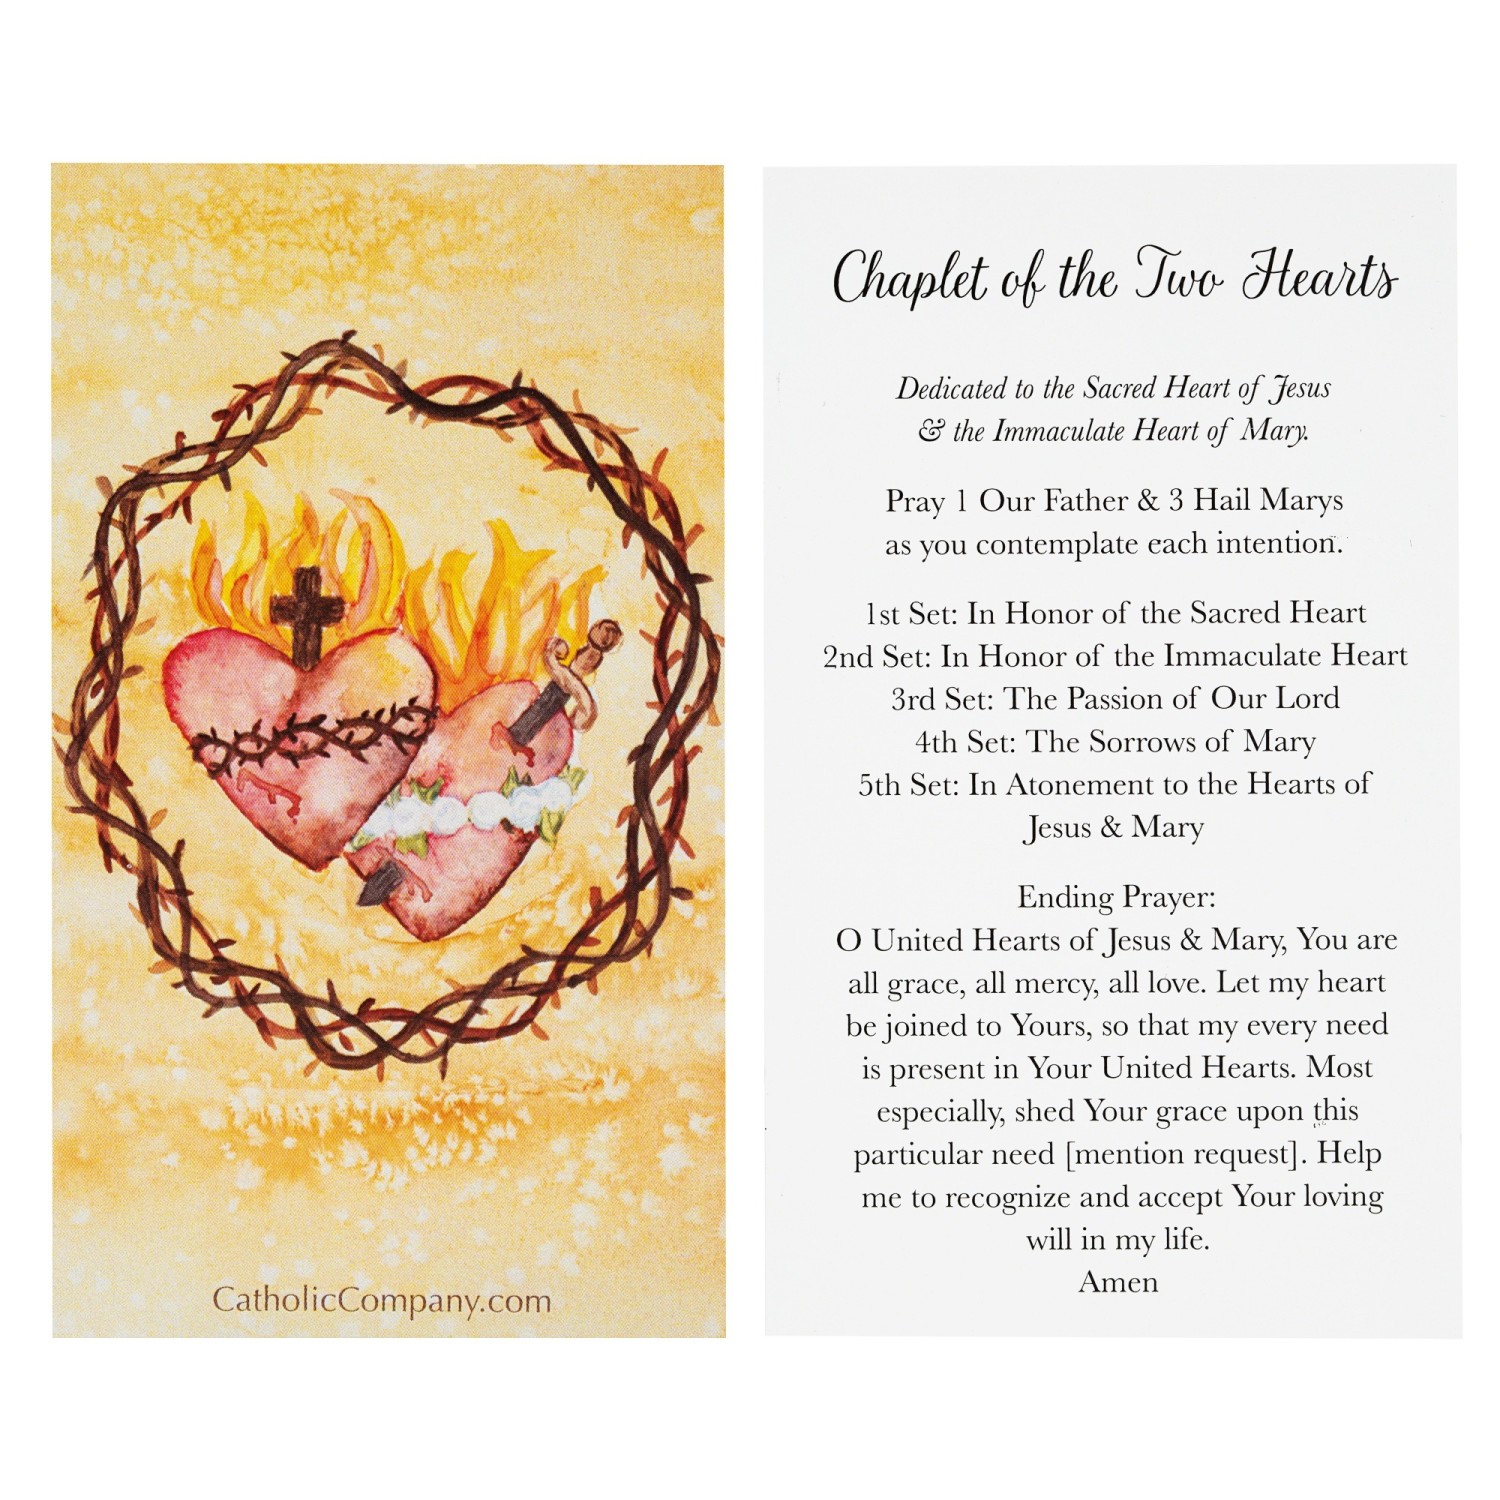 Chaplet of the Sacred Heart or Sacred Heart Chaplet Prayer